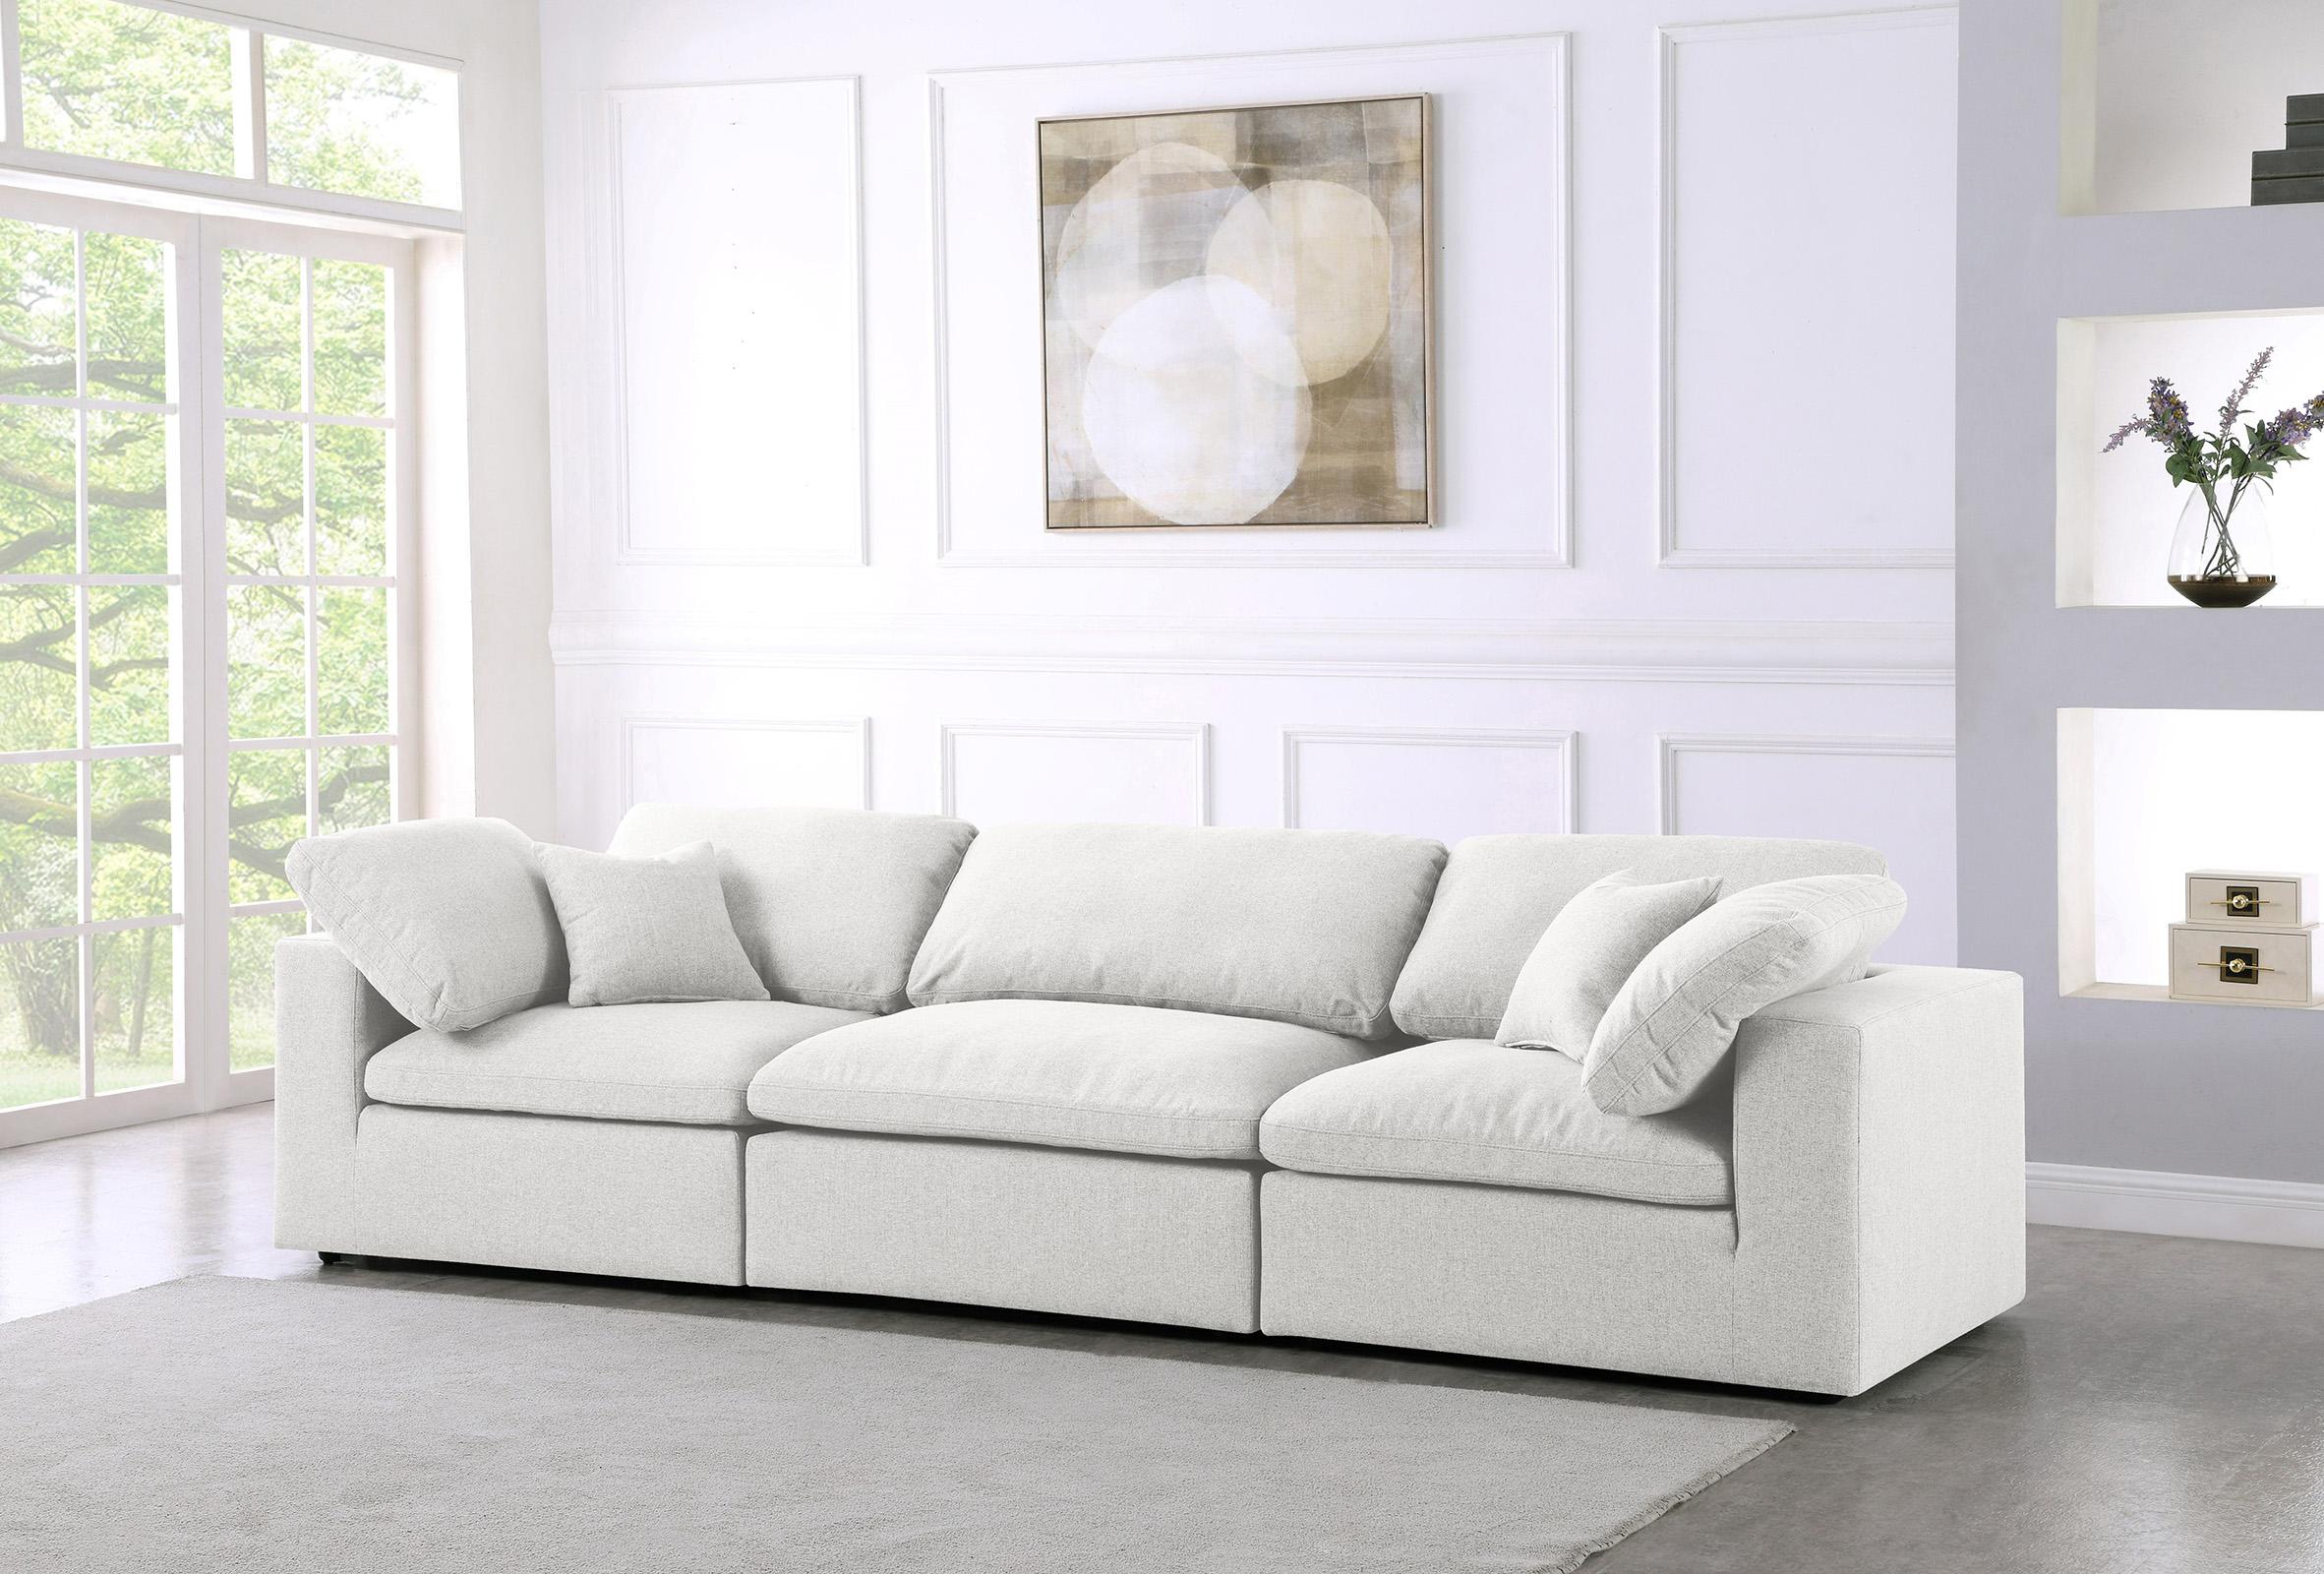 

    
Meridian Furniture SERENE 601Cream-S119 Modular Sofa Cream 601Cream-S119
